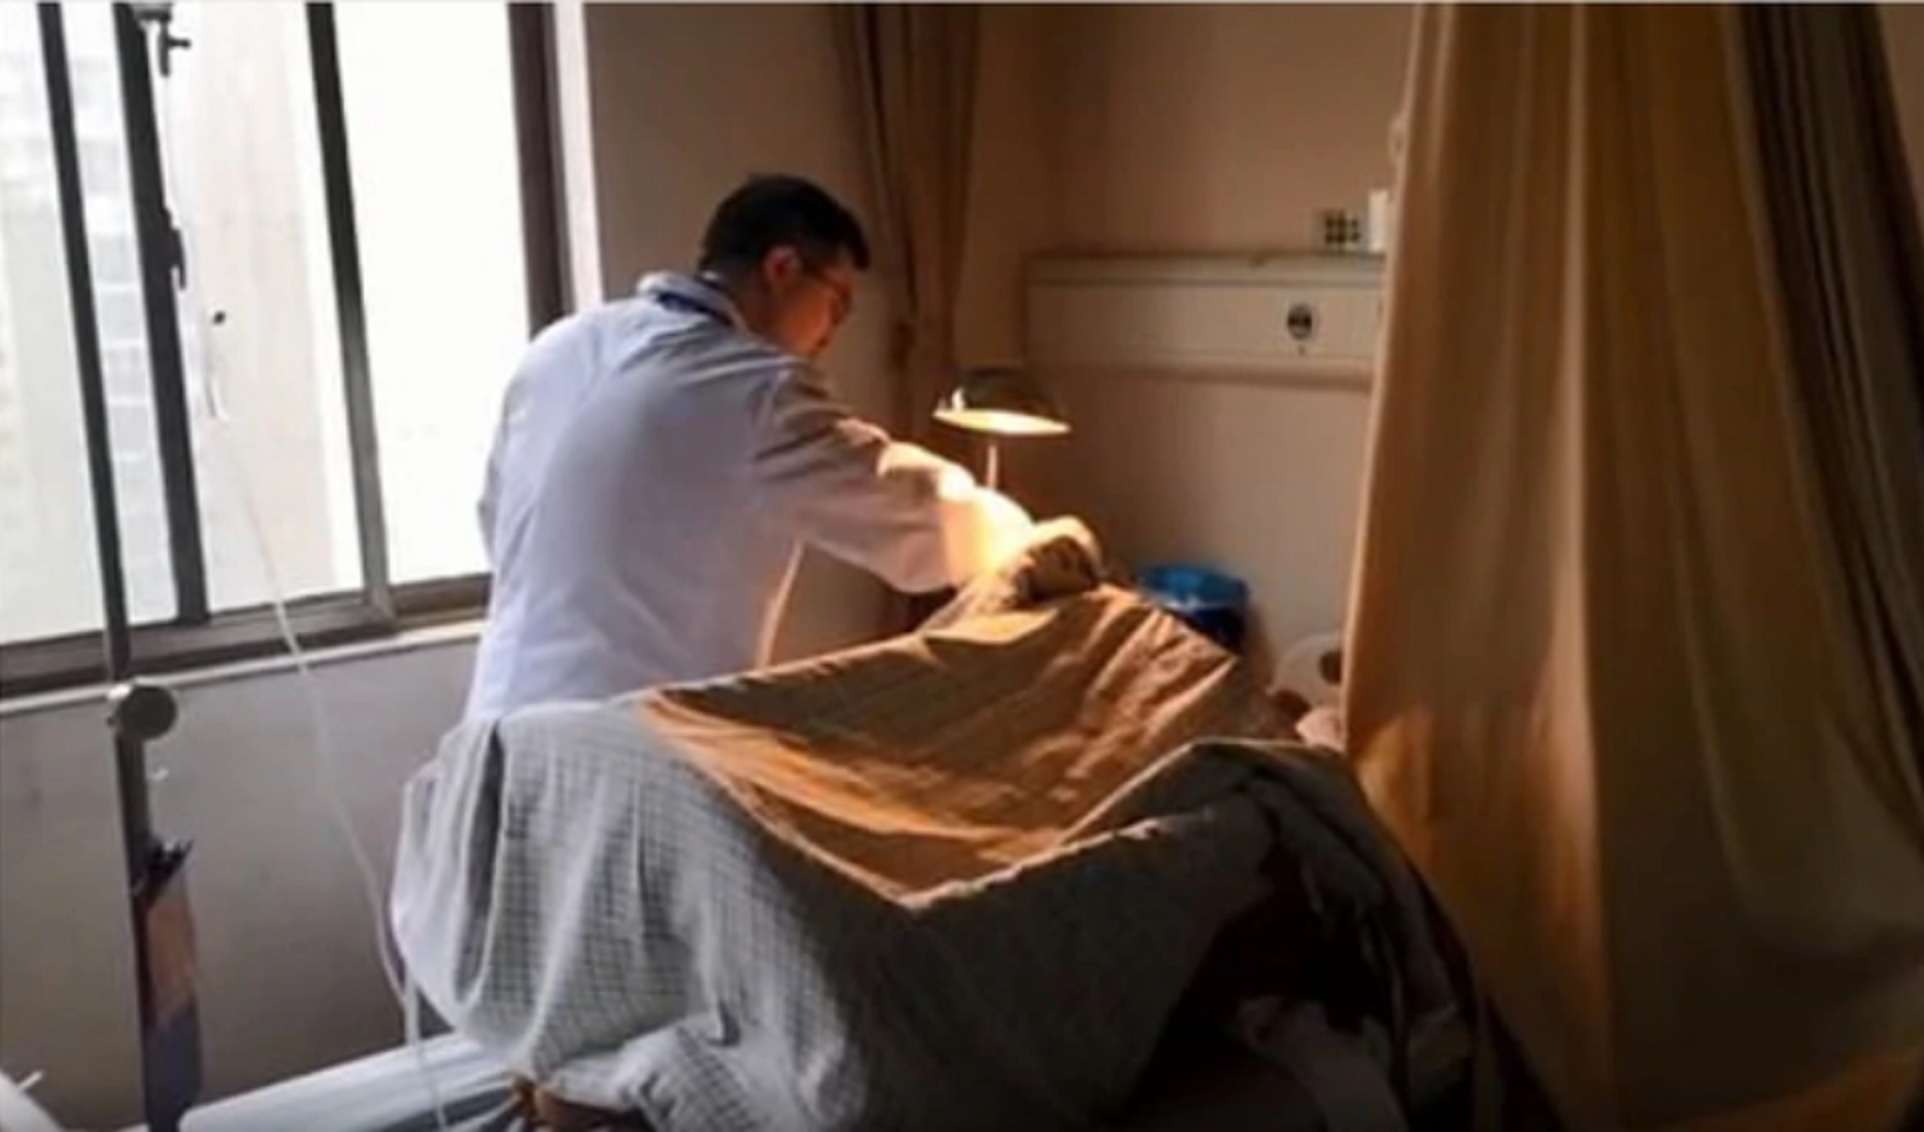 El hospital Xiangya, ubicado en Changsha, China, era el único que contaba con el personal de especialistas necesario para reimplantarle el pene a la víctima. Foto: Xiangya Hospital/Weibo